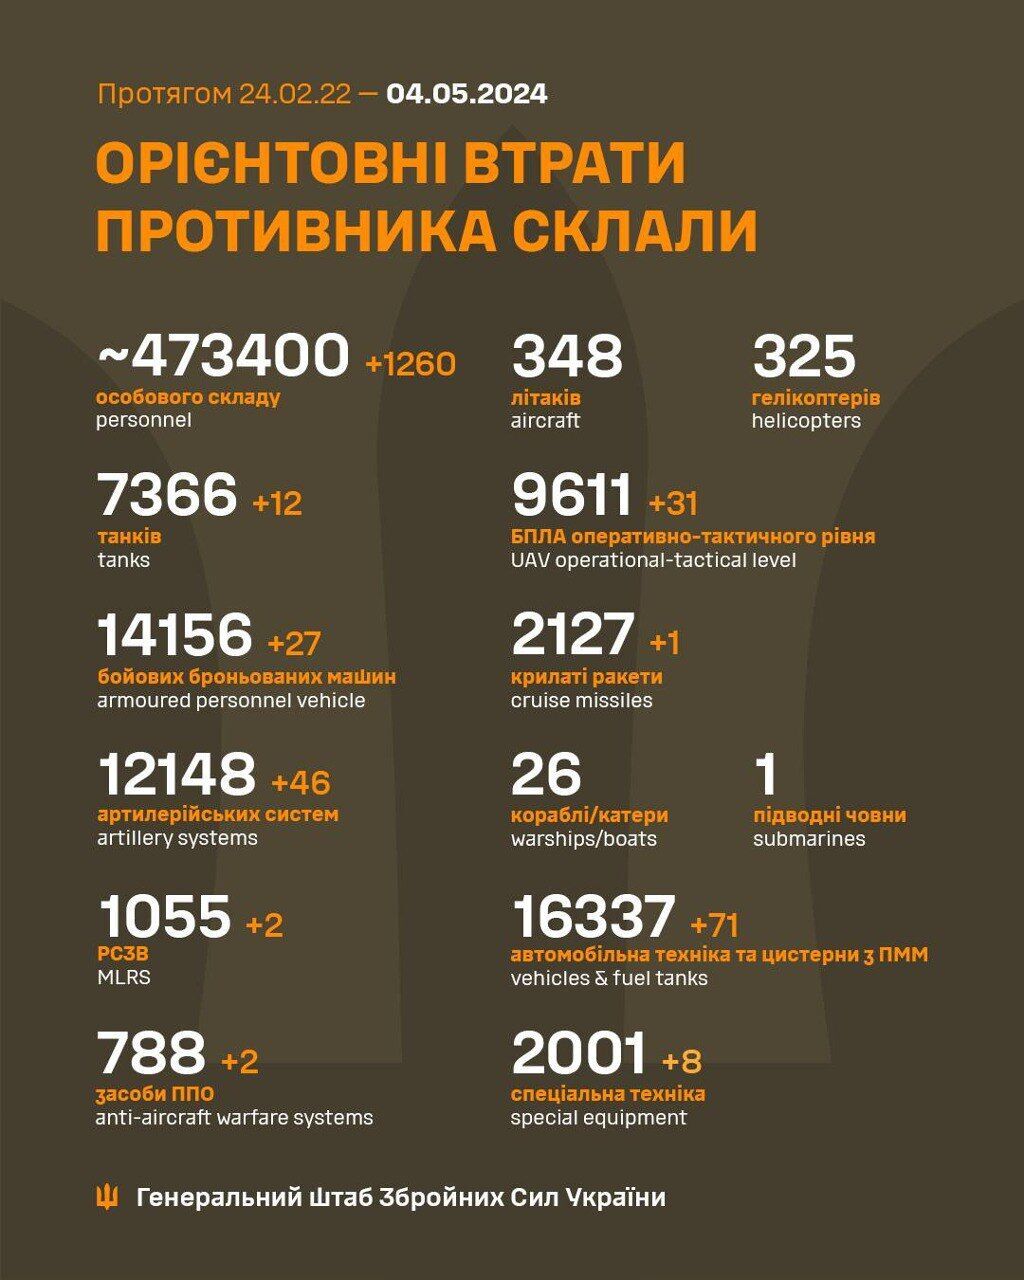 Украинские воины отменяли 1260 оккупантов, 46 артсистем и 12 танков врага за сутки – Генштаб